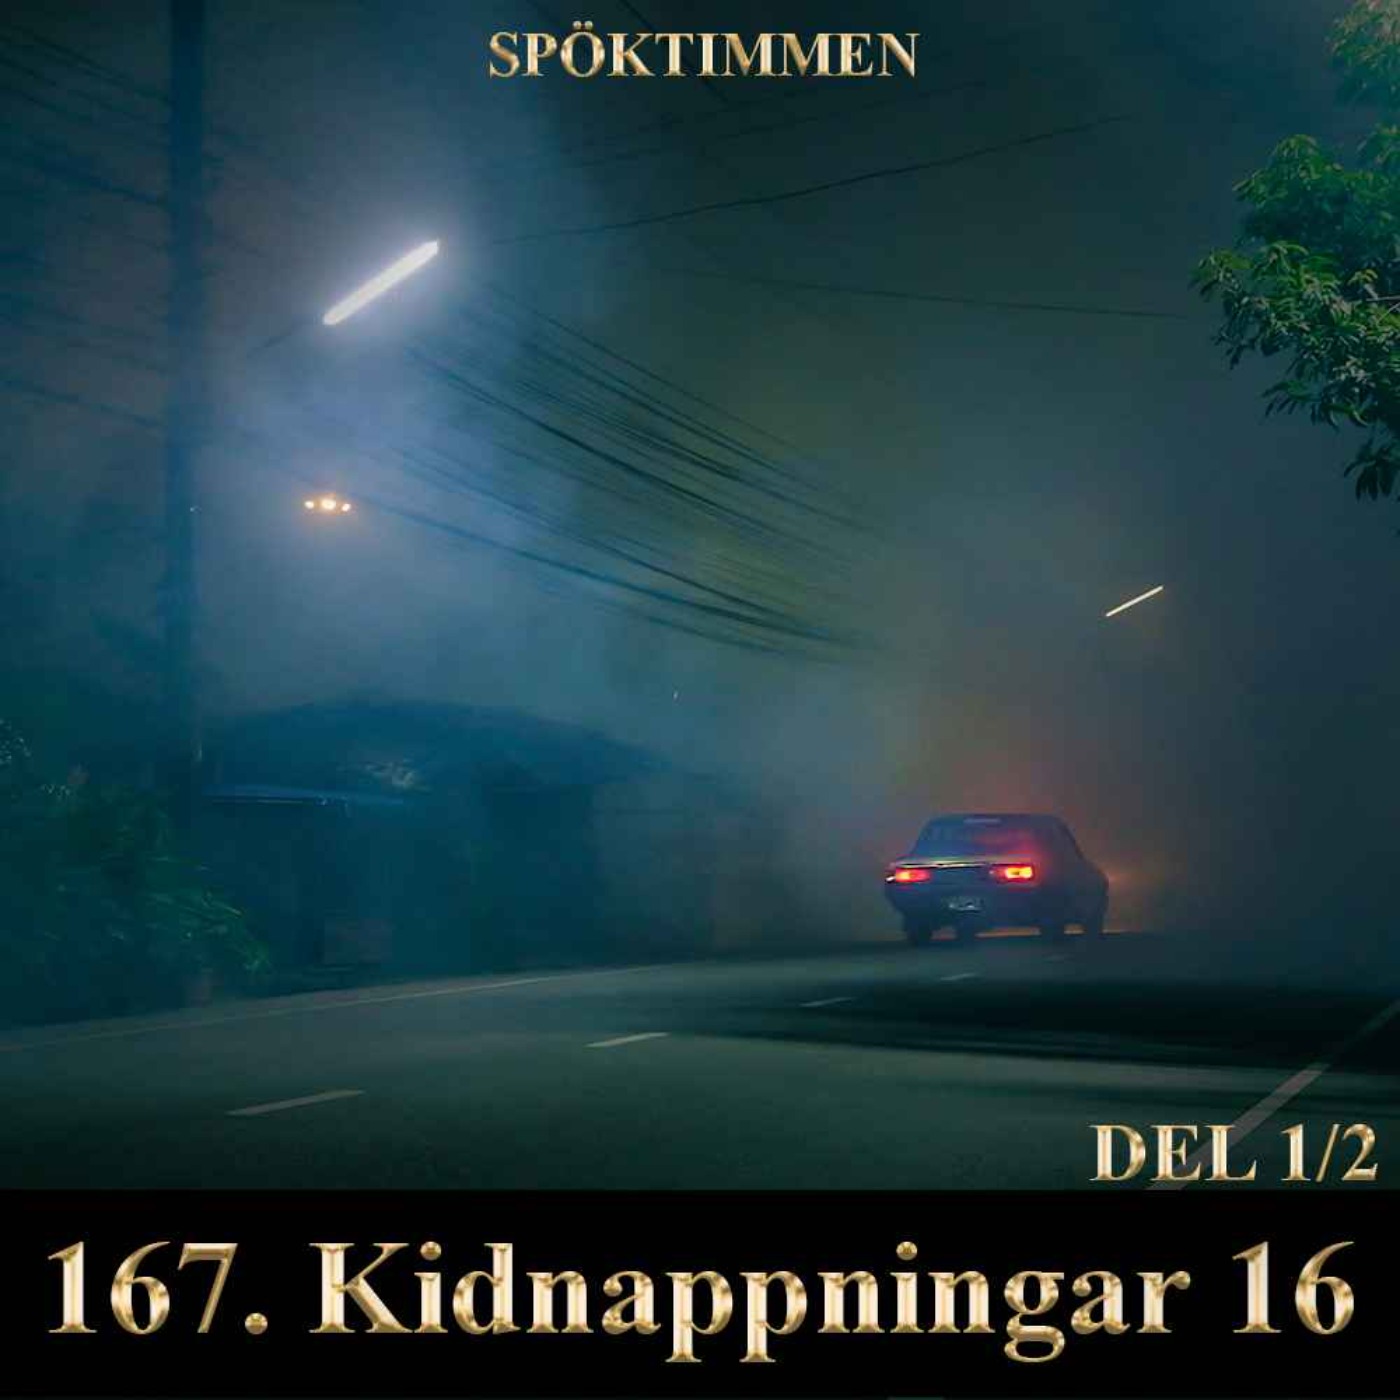 Kidnappningar 16 – Del 1